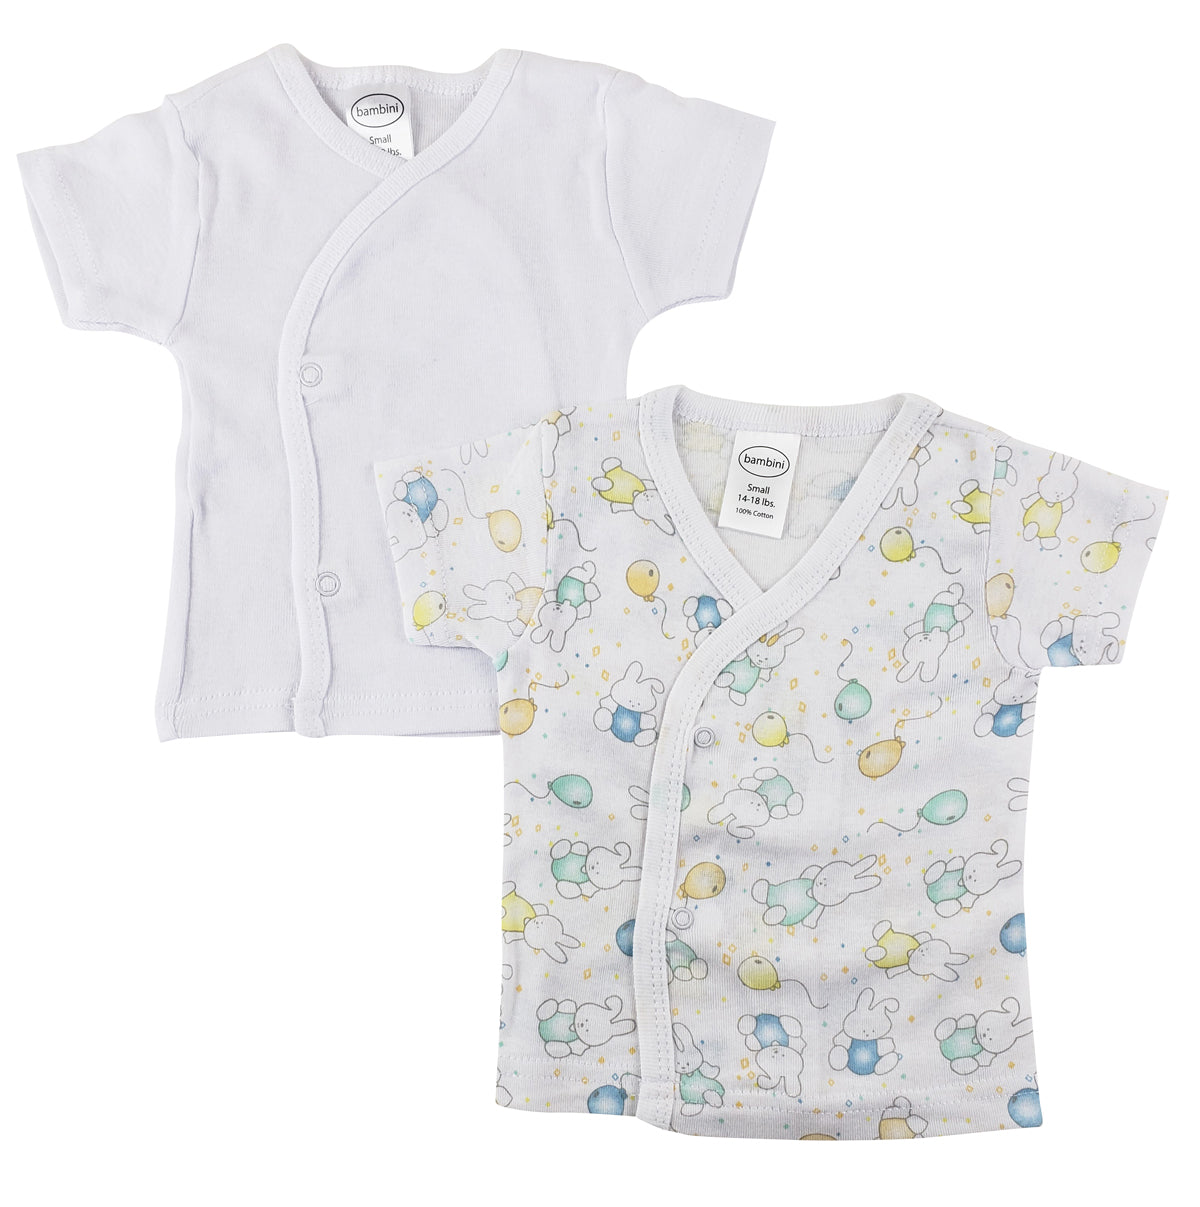 Infant Side Snap Short Sleeve Shirt - 2 Pack